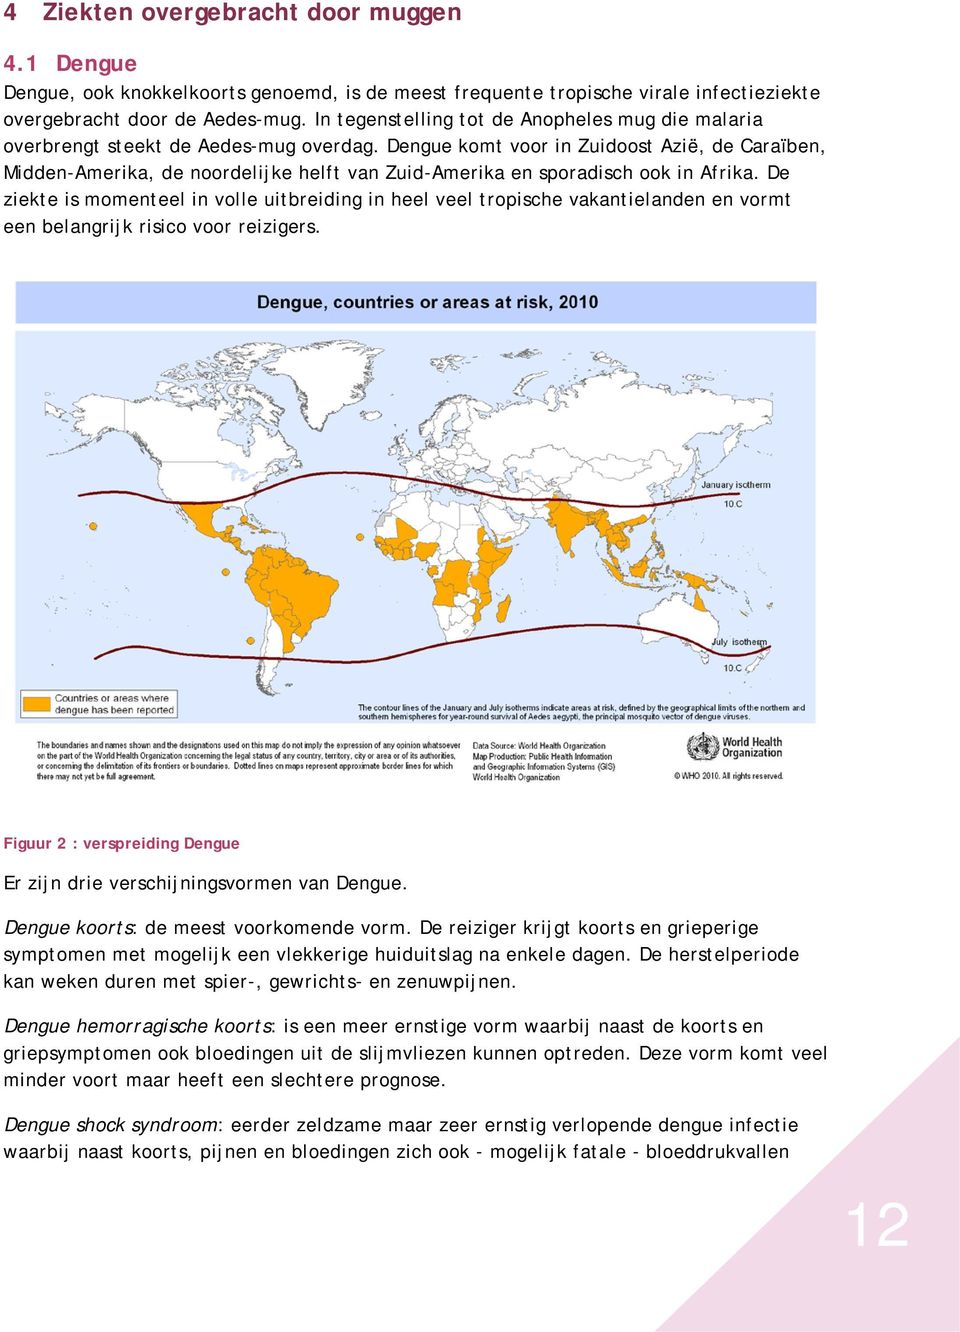 Dengue komt voor in Zuidoost Azië, de Caraïben, Midden-Amerika, de noordelijke helft van Zuid-Amerika en sporadisch ook in Afrika.